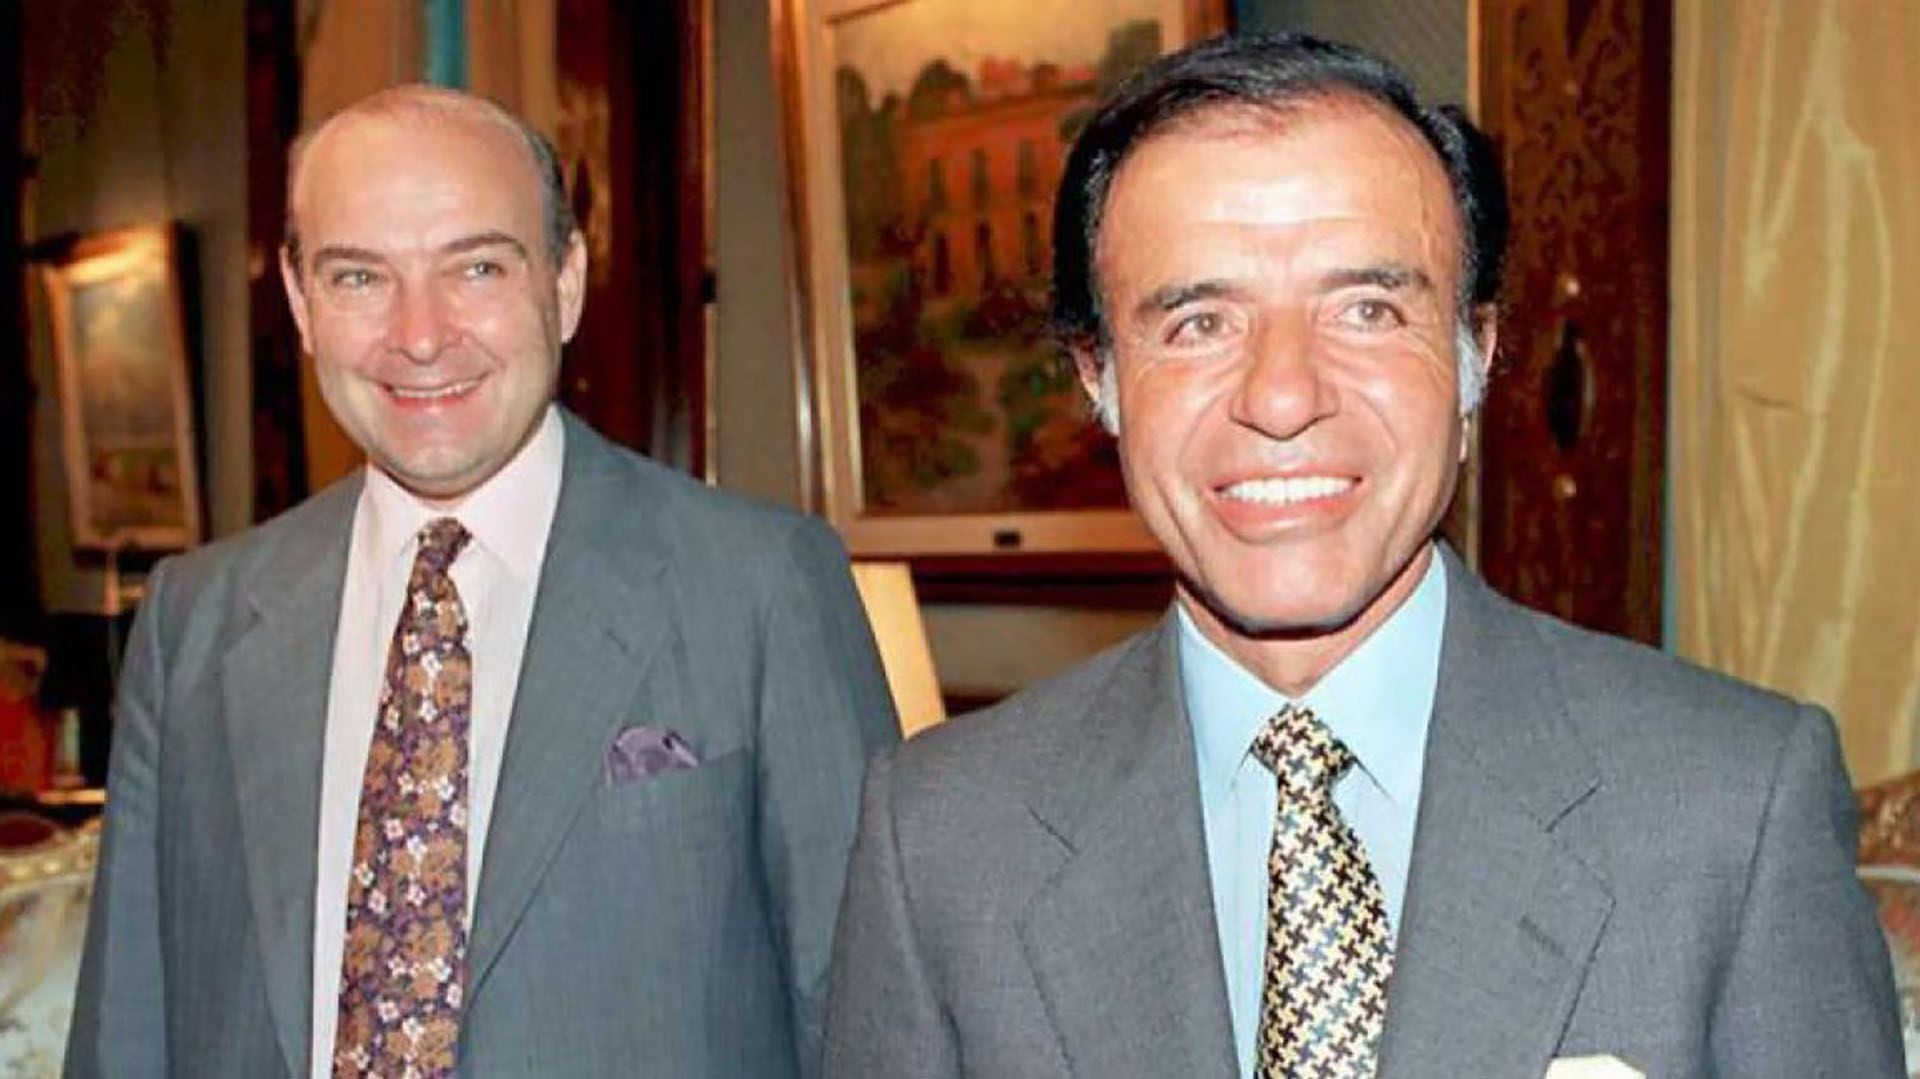 Domingo Cavallo asumió como ministro de Economía de Menem el 1 de marzo de 1991 tras dejar la Cancillería ante la salida de Erman González. Ya se habían implementado  profundas reformas estructurales que incluyeron la privatización de empresas estatales, la apertura económica y más tarde la implementación de la ley de convertibilidad (AFP).